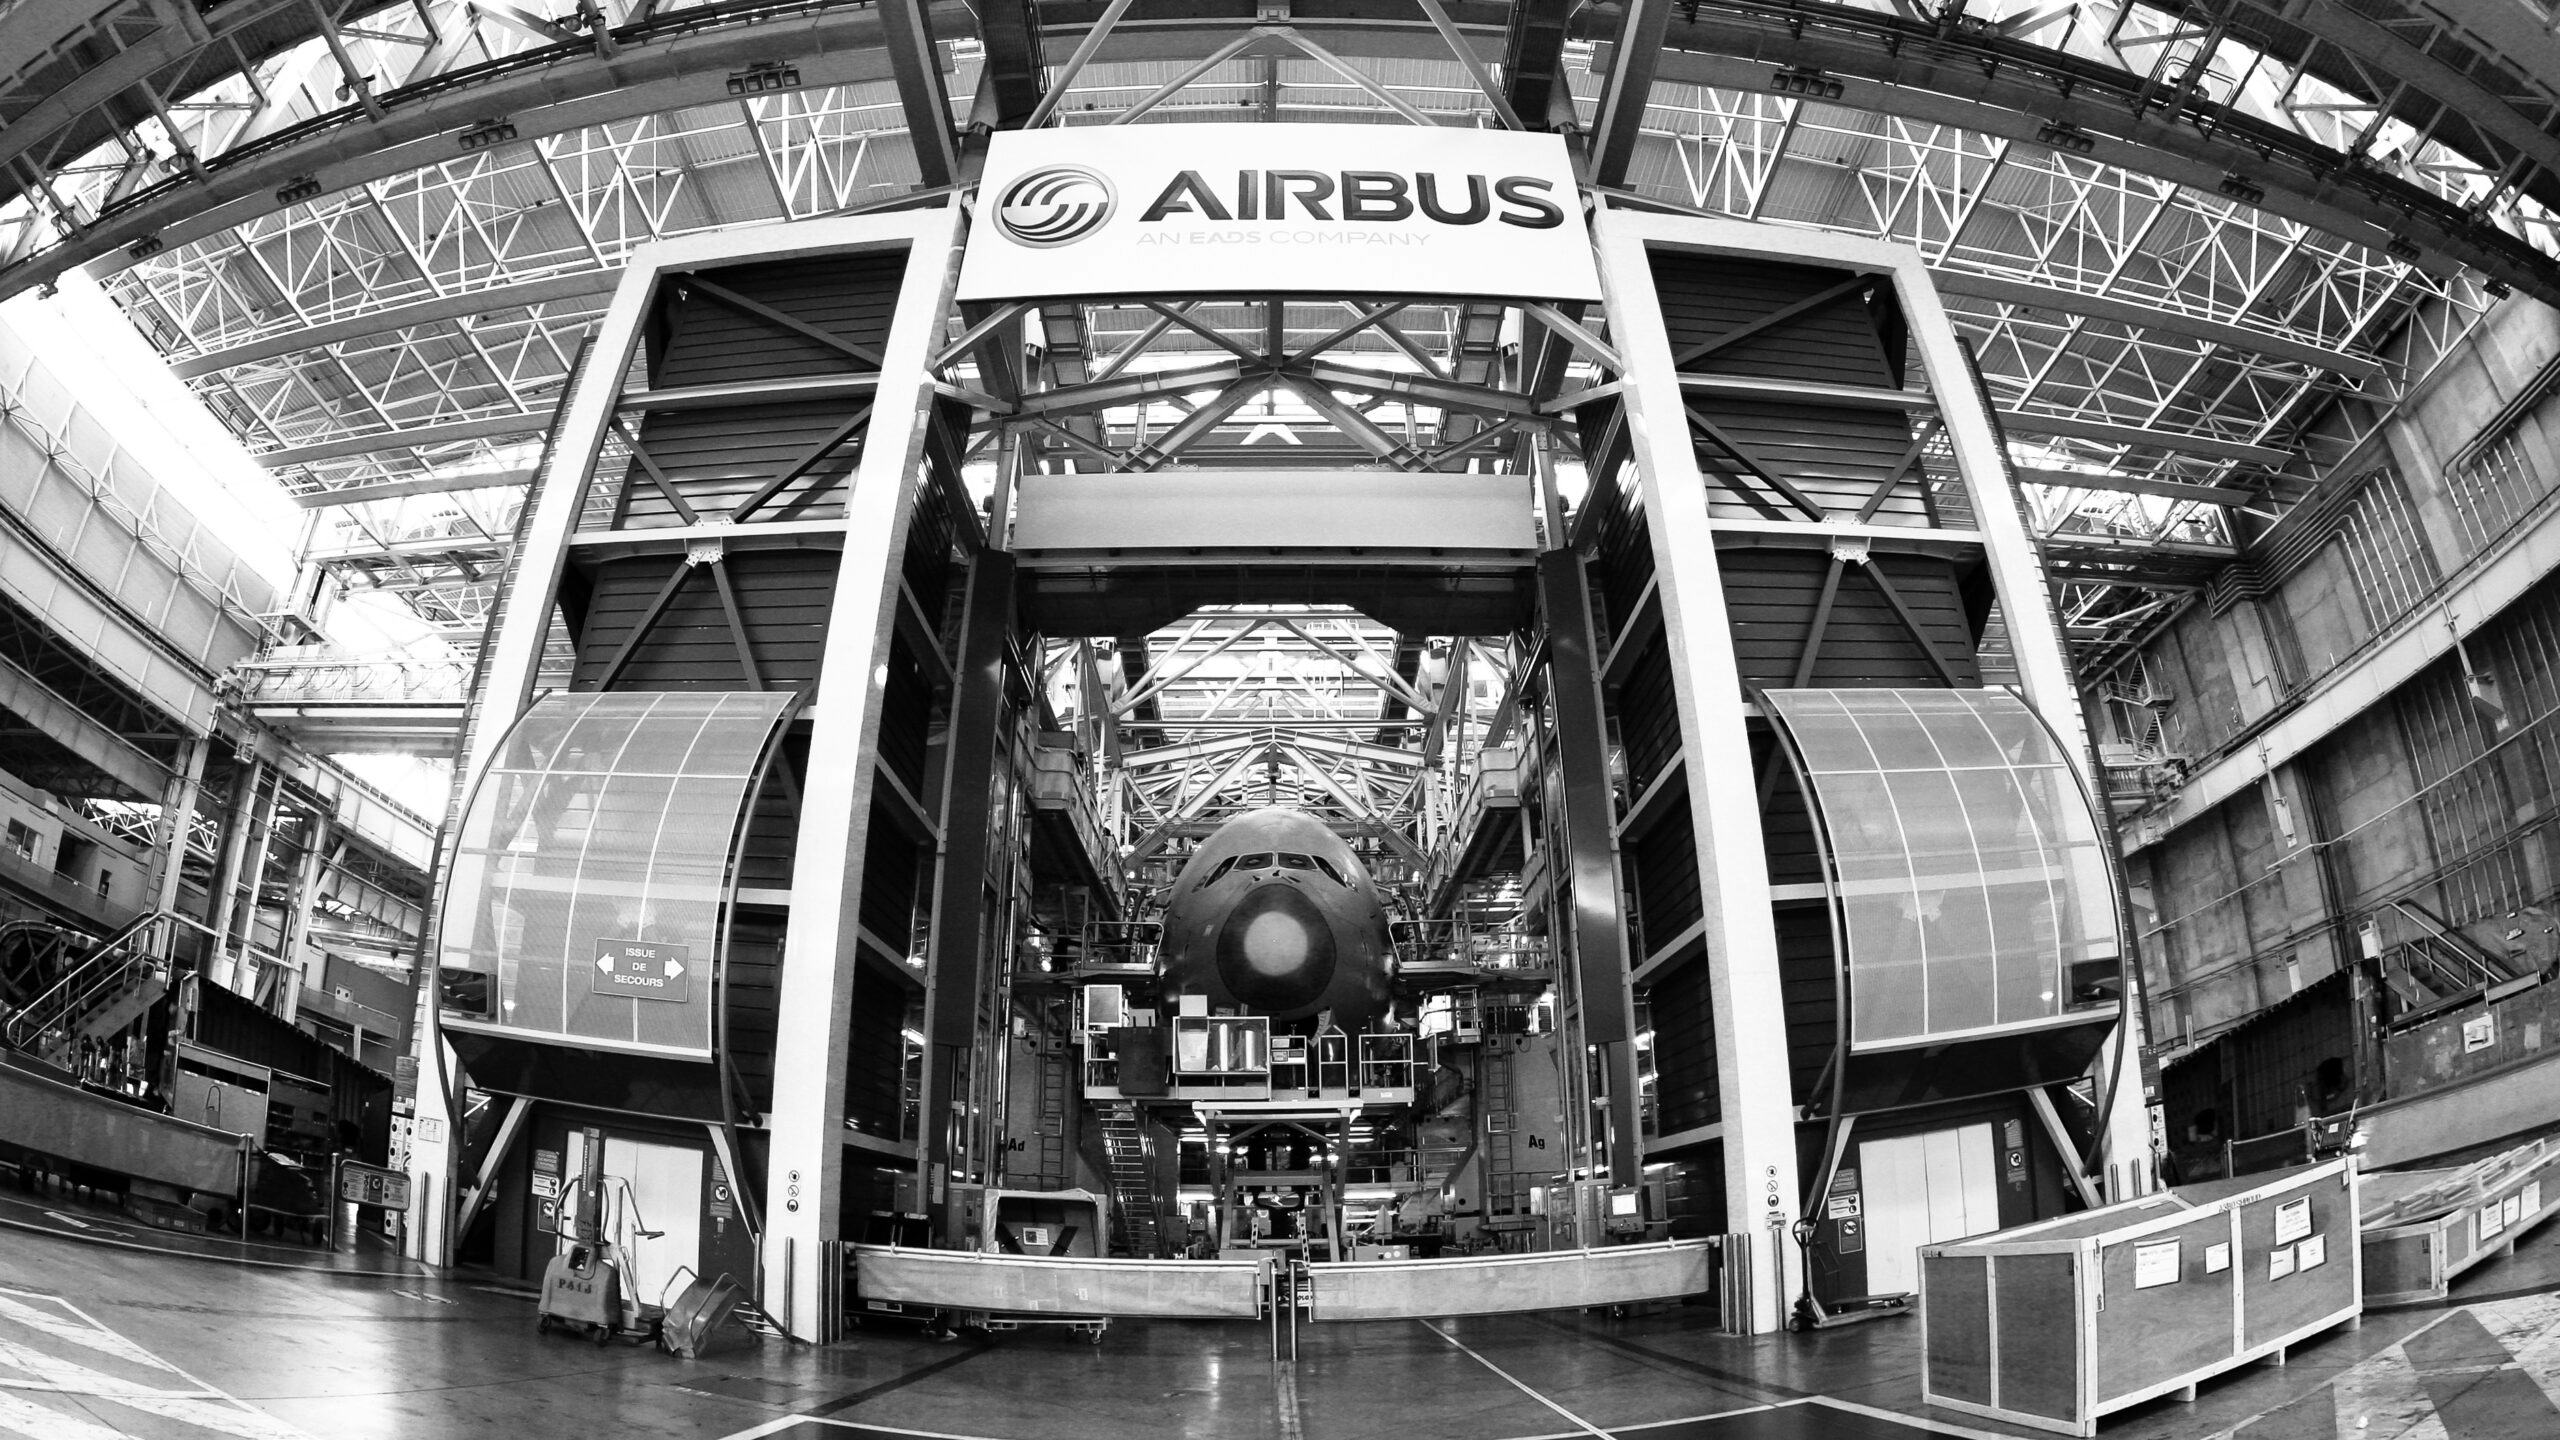 Airbus, statutair gevestigd in Leiden, is een van de deelnemers in Miris.